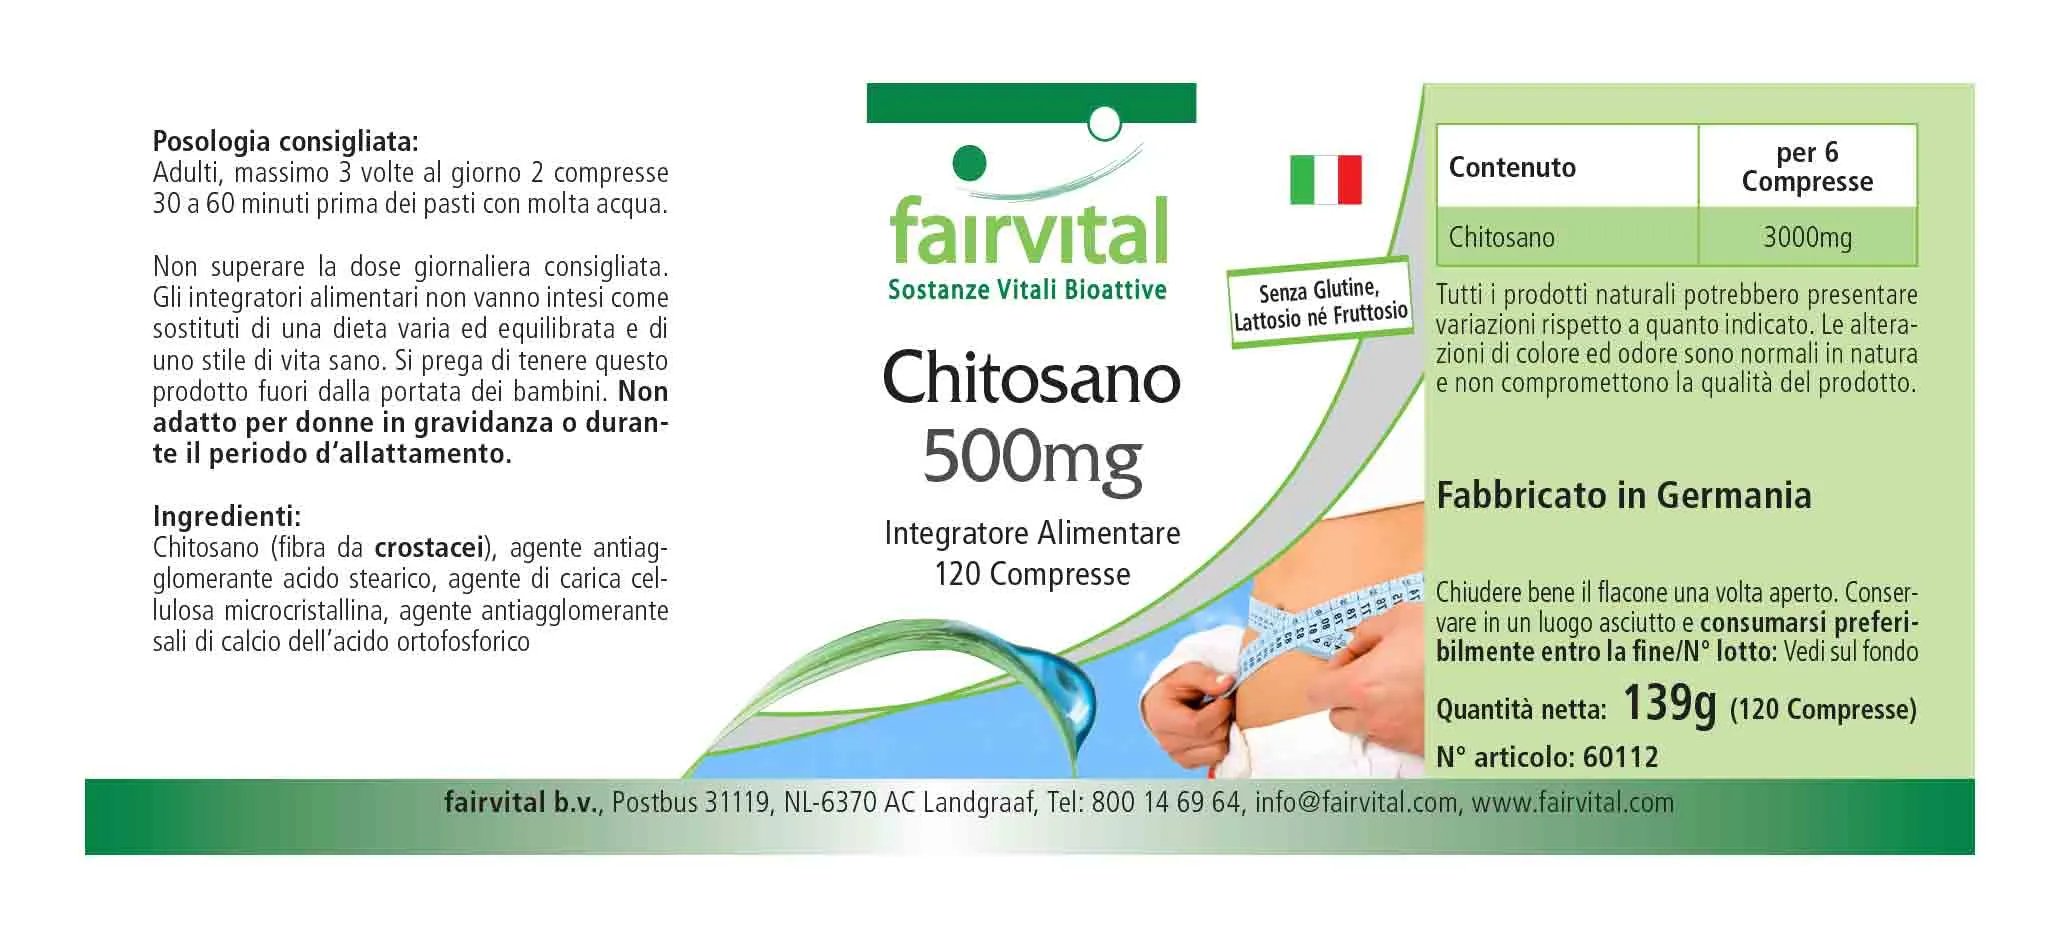 Chitosan 500mg - 120 tablets